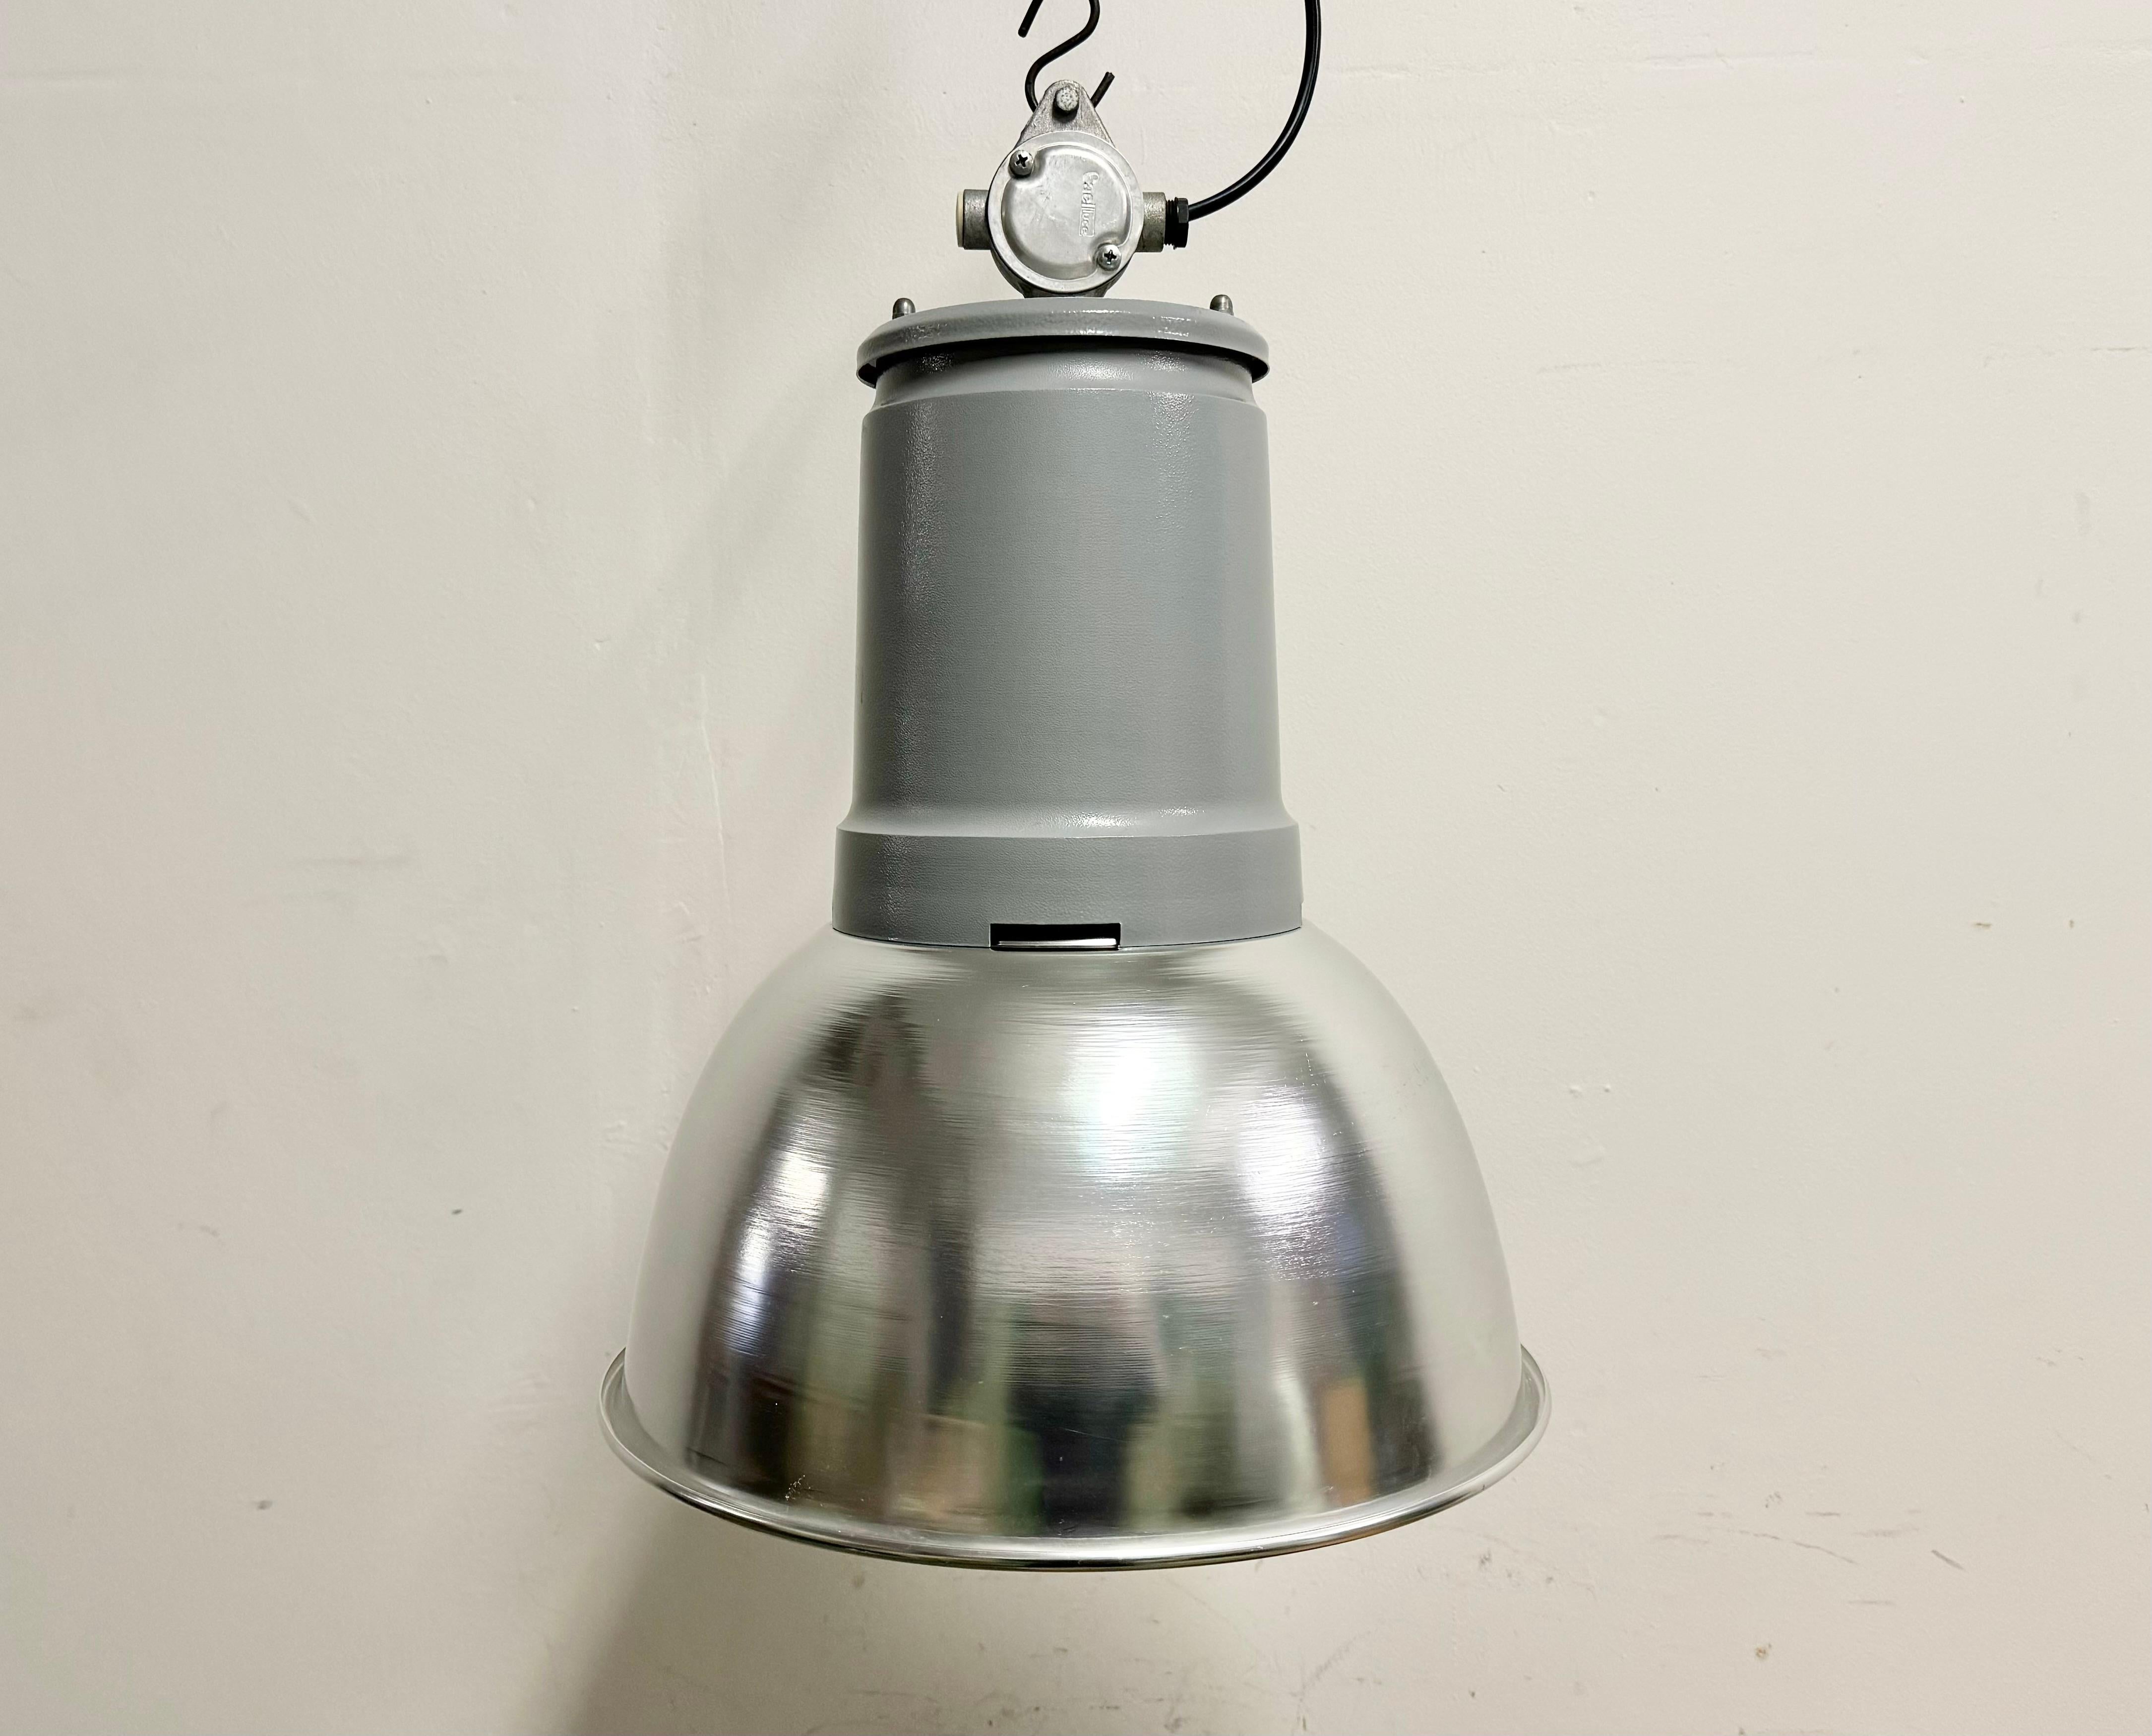 Diese Pendelleuchte wurde in den 1970er Jahren von Fael Luce in Italien hergestellt. Die Leuchte besteht aus einem Lampenschirm aus Aluminium und einer Eisenplatte mit Aluminiumgussgehäuse. Die Lampe ist voll funktionsfähig und verfügt über eine